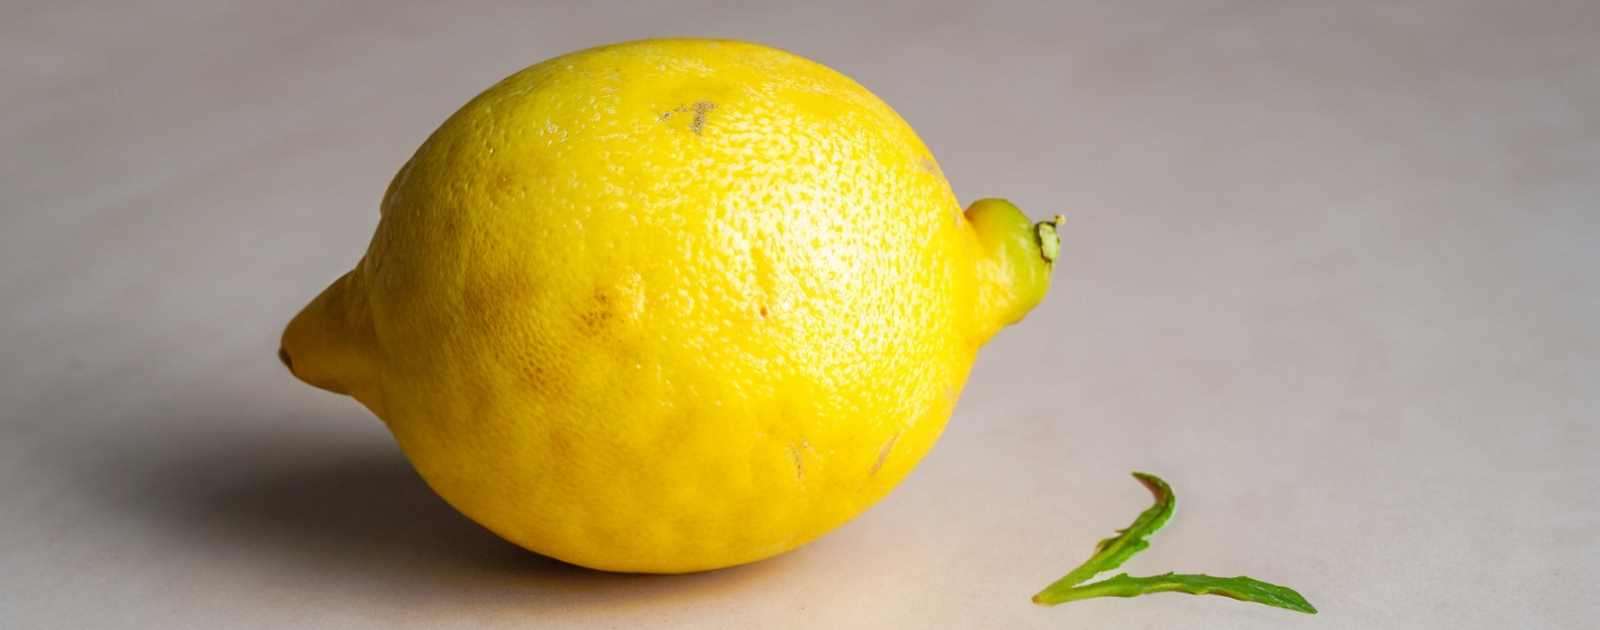 Is Lemon a Melon or a Fruit?